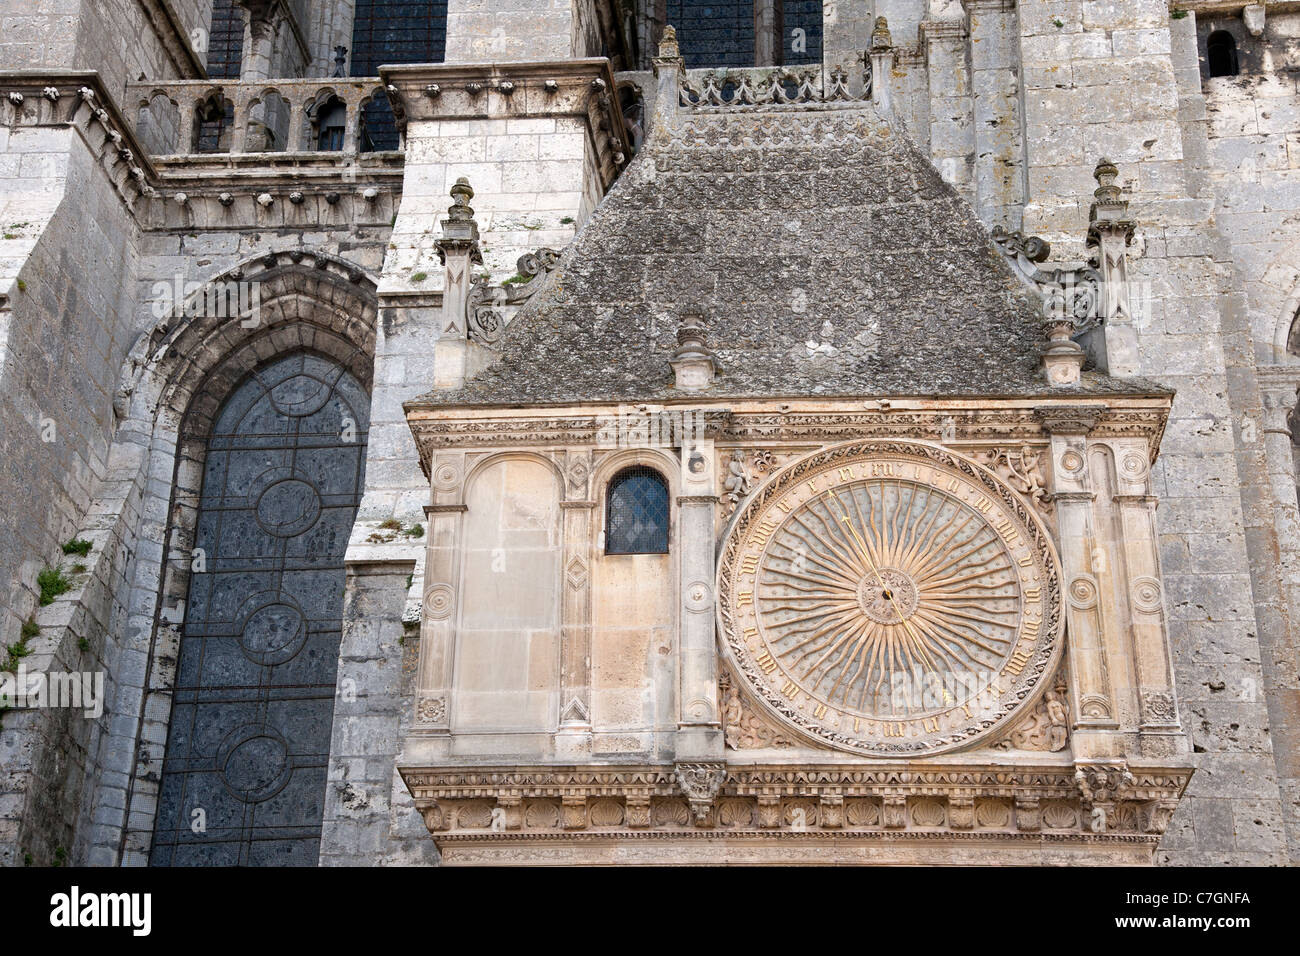 Ancienne horloge astronomique sur la façade de la célèbre cathédrale de Chartres, France Banque D'Images